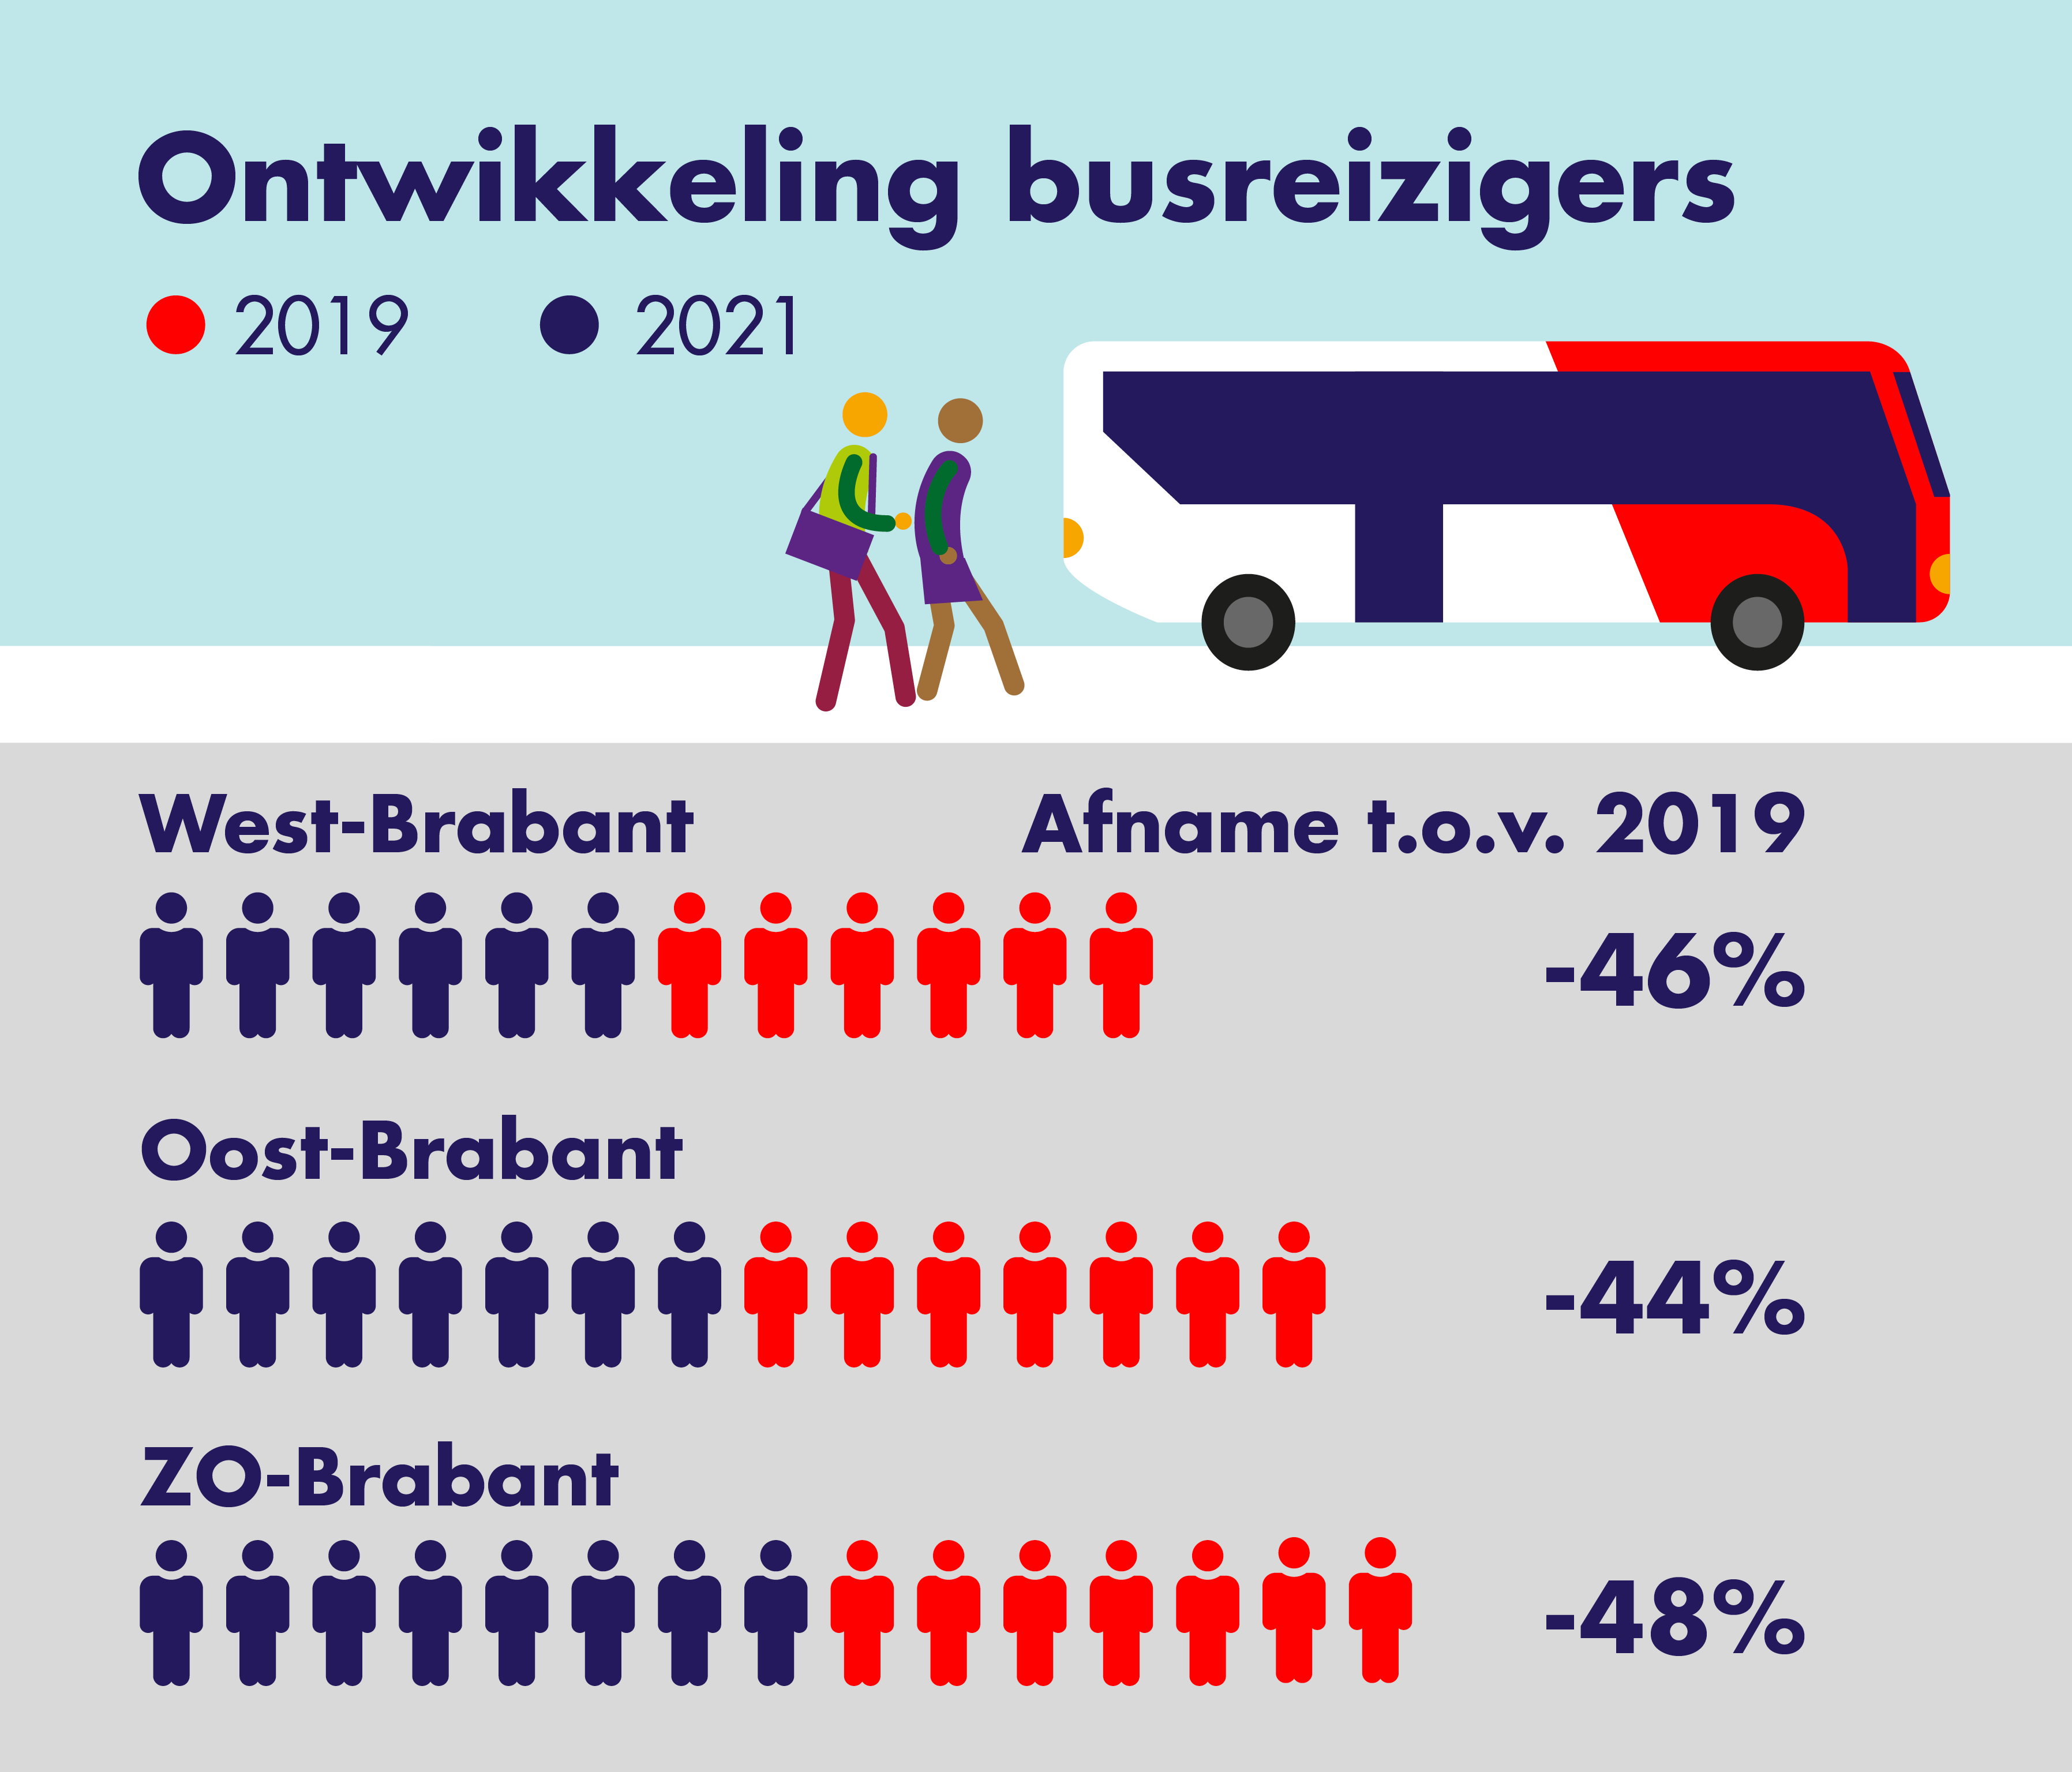 Op deze afbeelding is de ontwikkeling van de busreizigers per consessiegebied weergegeven. 
                    In 2021 is er ten opzichte van 2019 een afname.